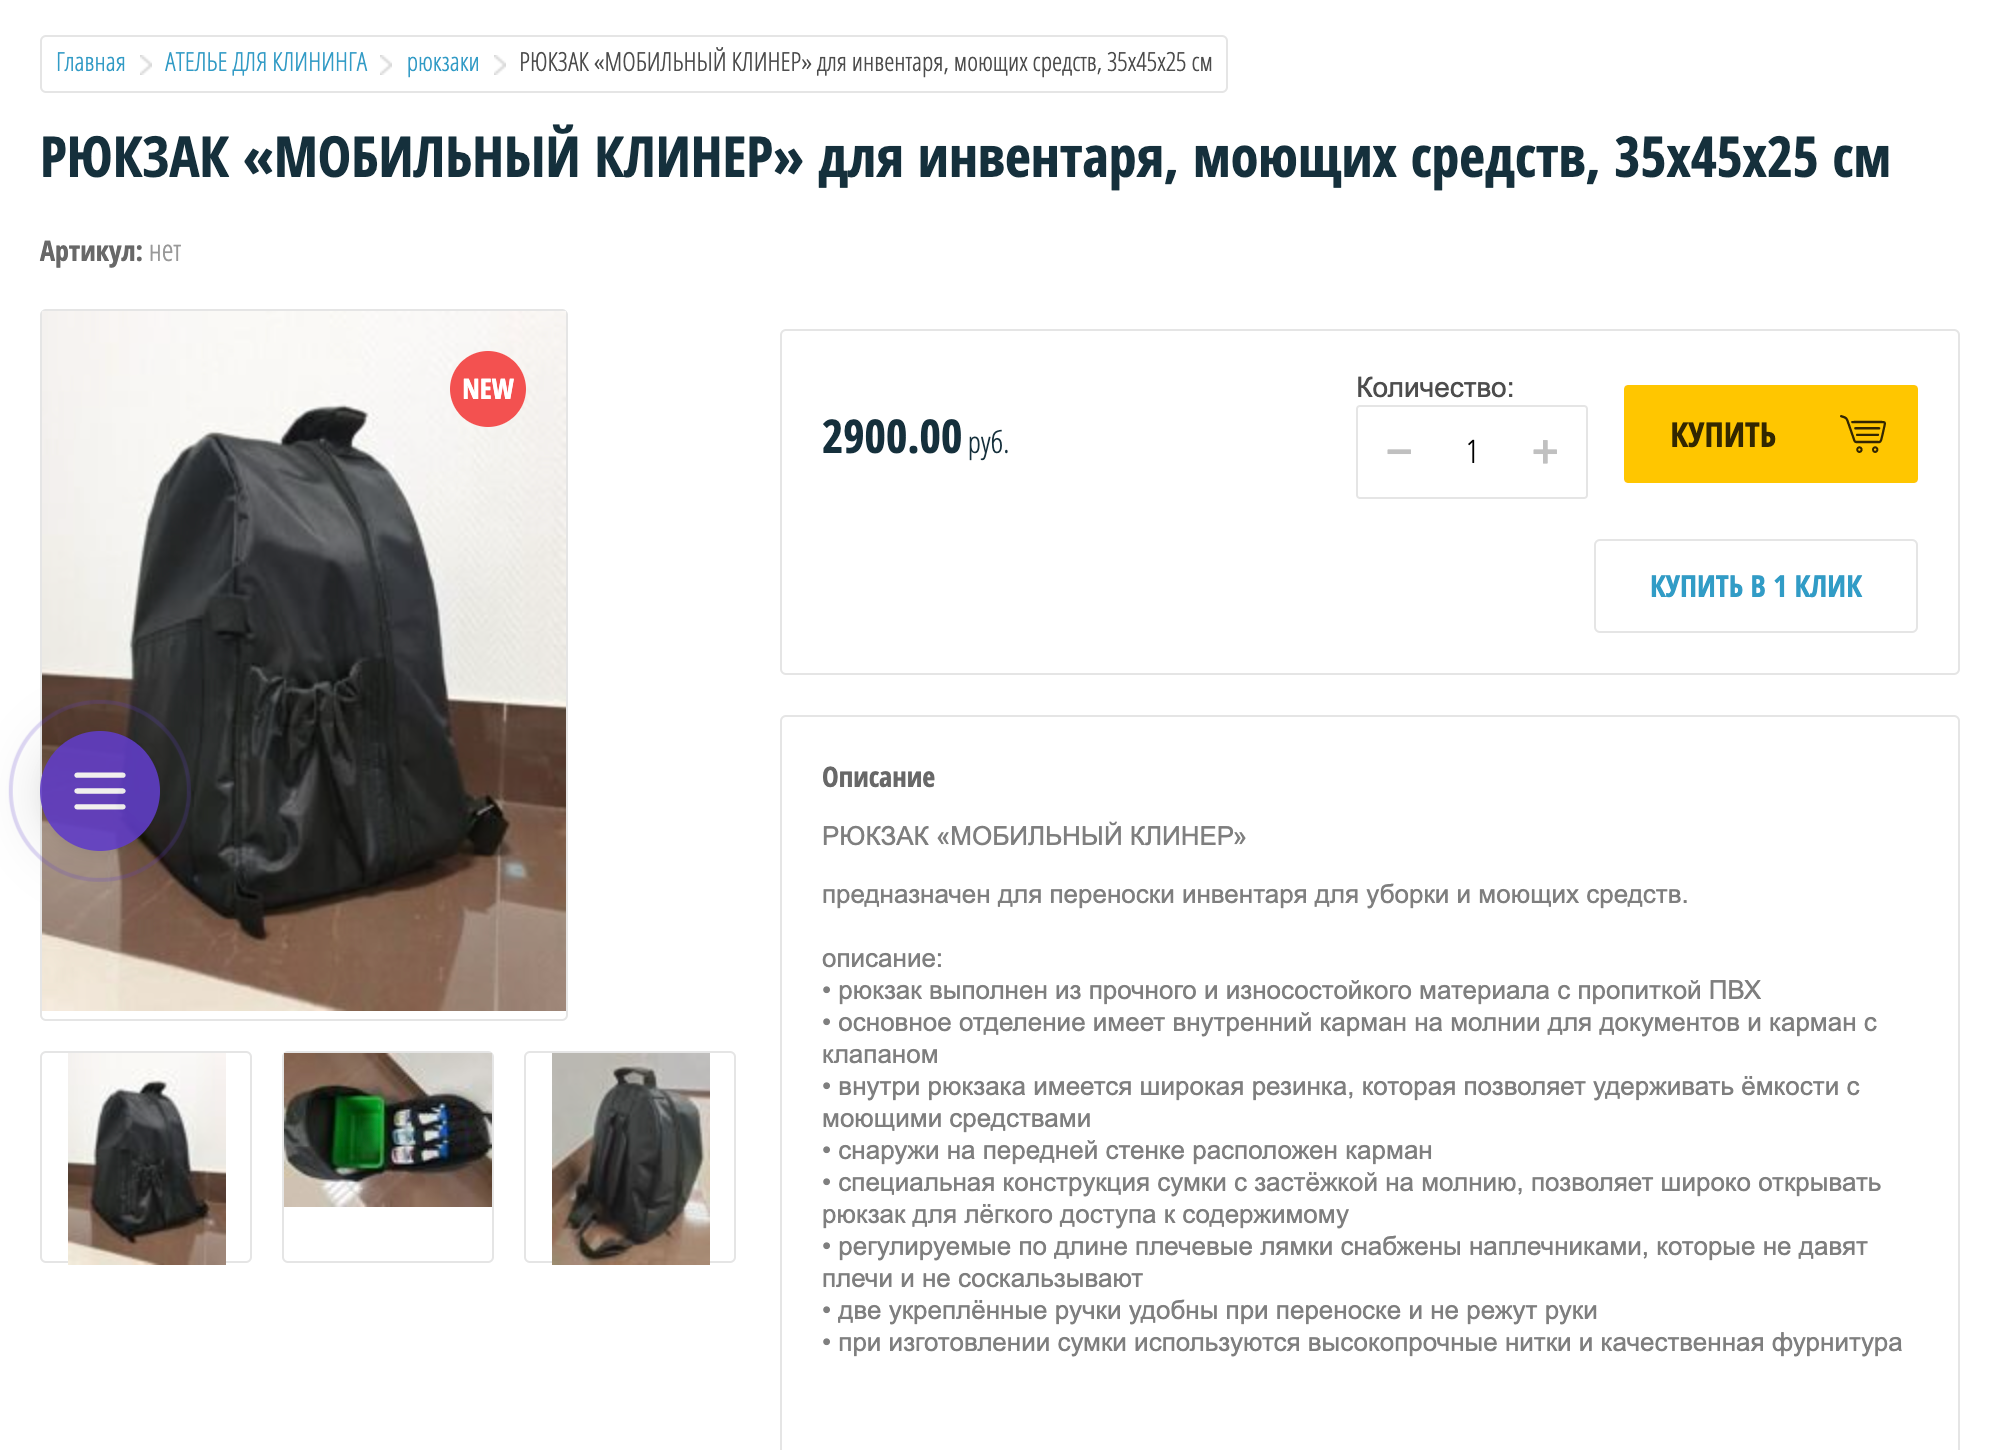 В специальном рюкзаке химия хранится вертикально, чтобы ничего не протекло. Стоимость таких рюкзаков-сумок начинается от 2900 ₽. Источник: broommarket.ru